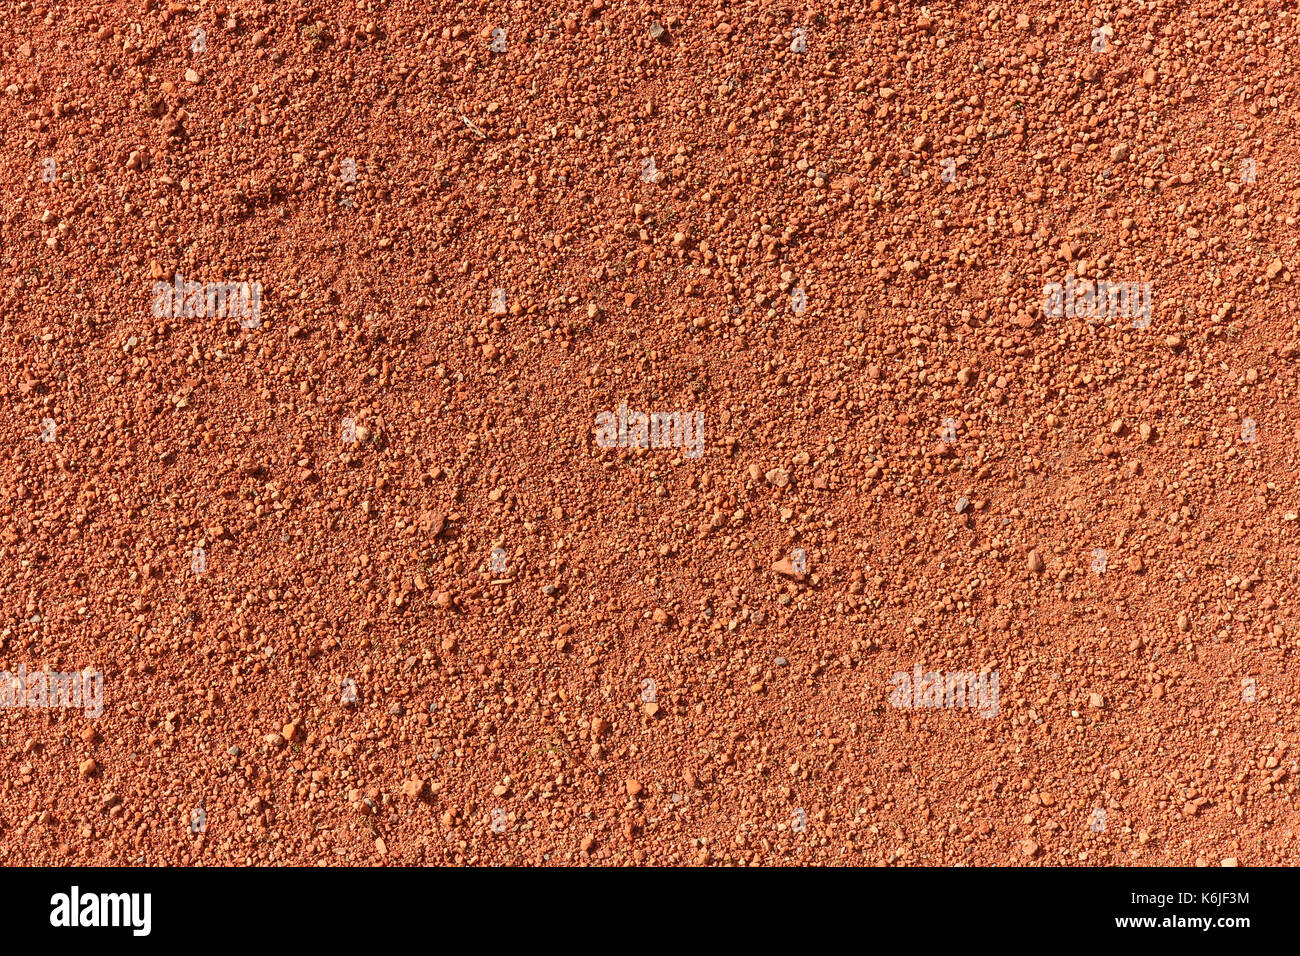 Tennis court ground surface texture. Tennis sport background. Stock Photo